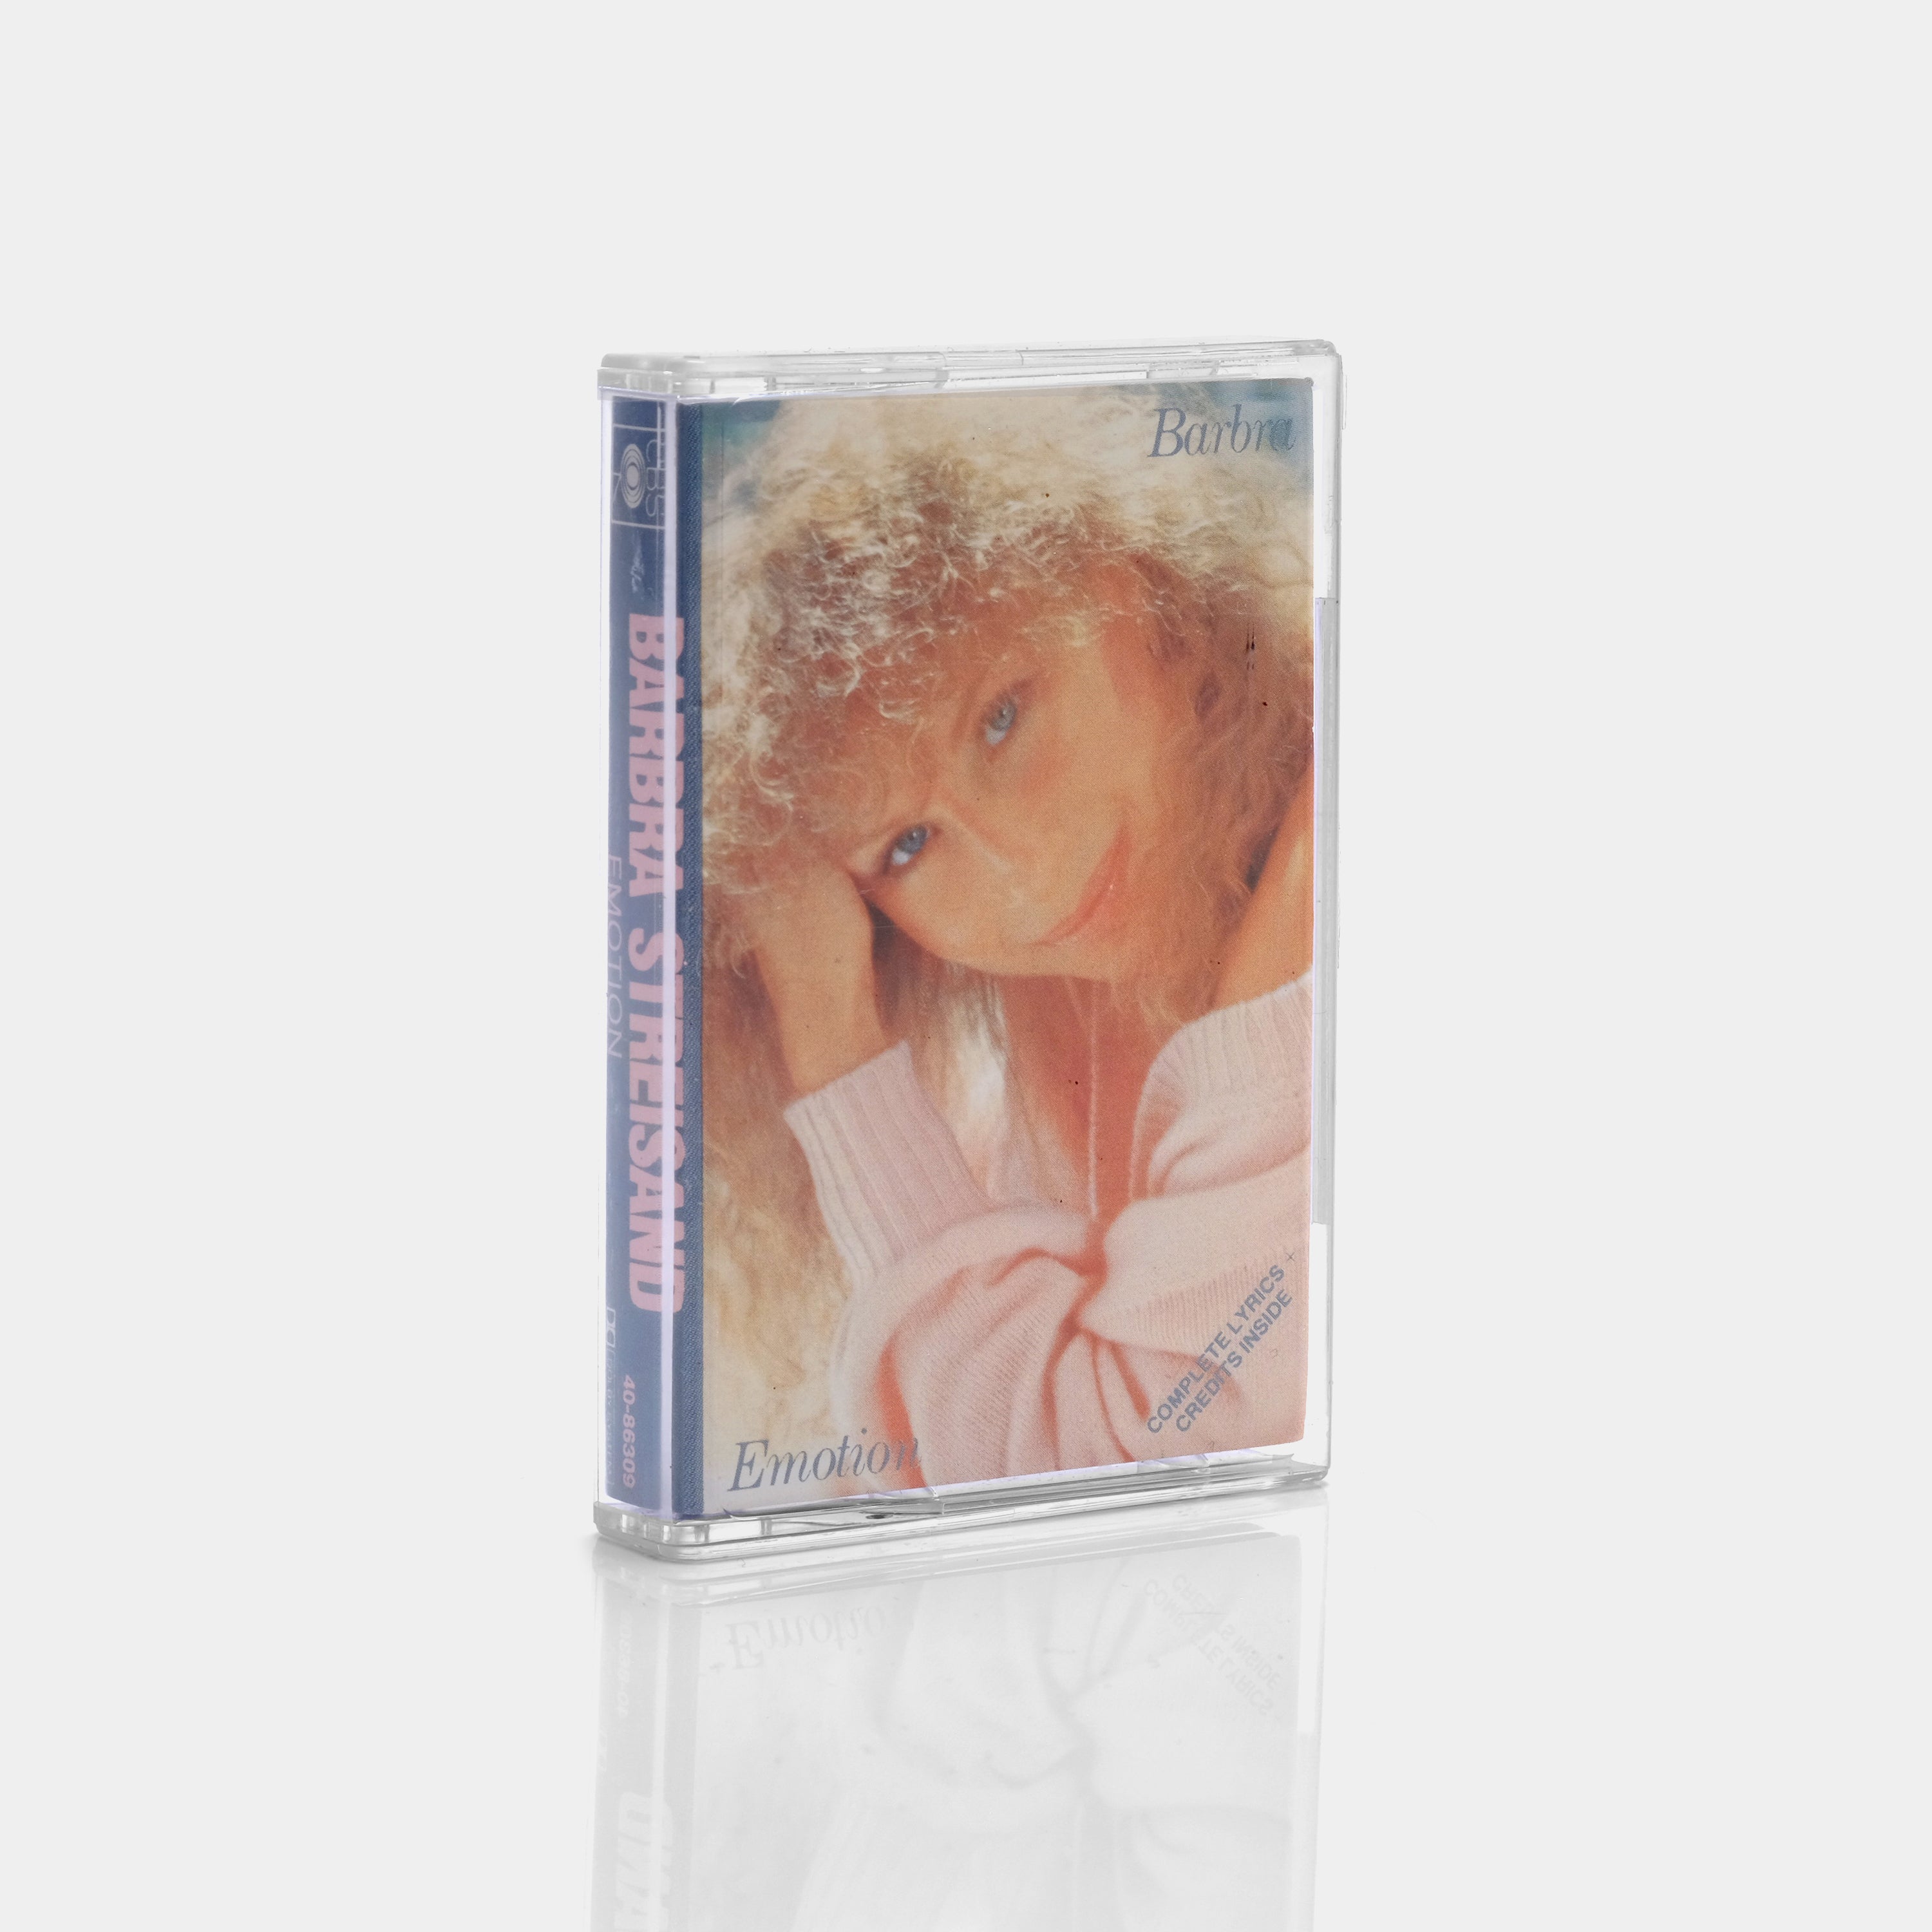 Barbra Streisand - Emotion Cassette Tape